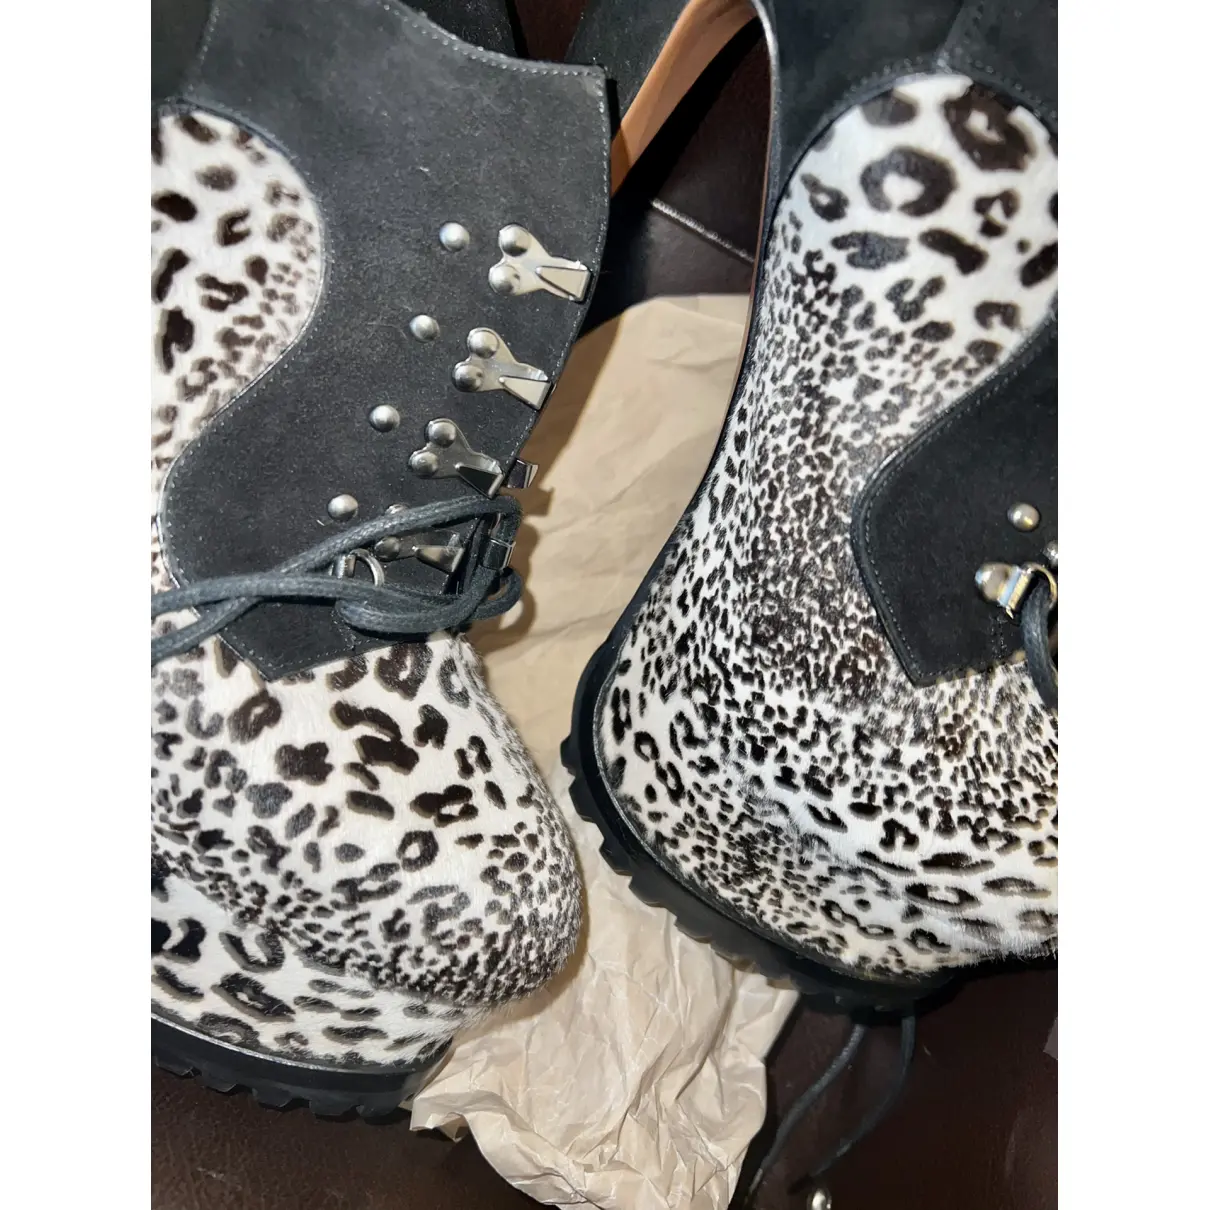 Pony-style calfskin lace up boots Alaïa